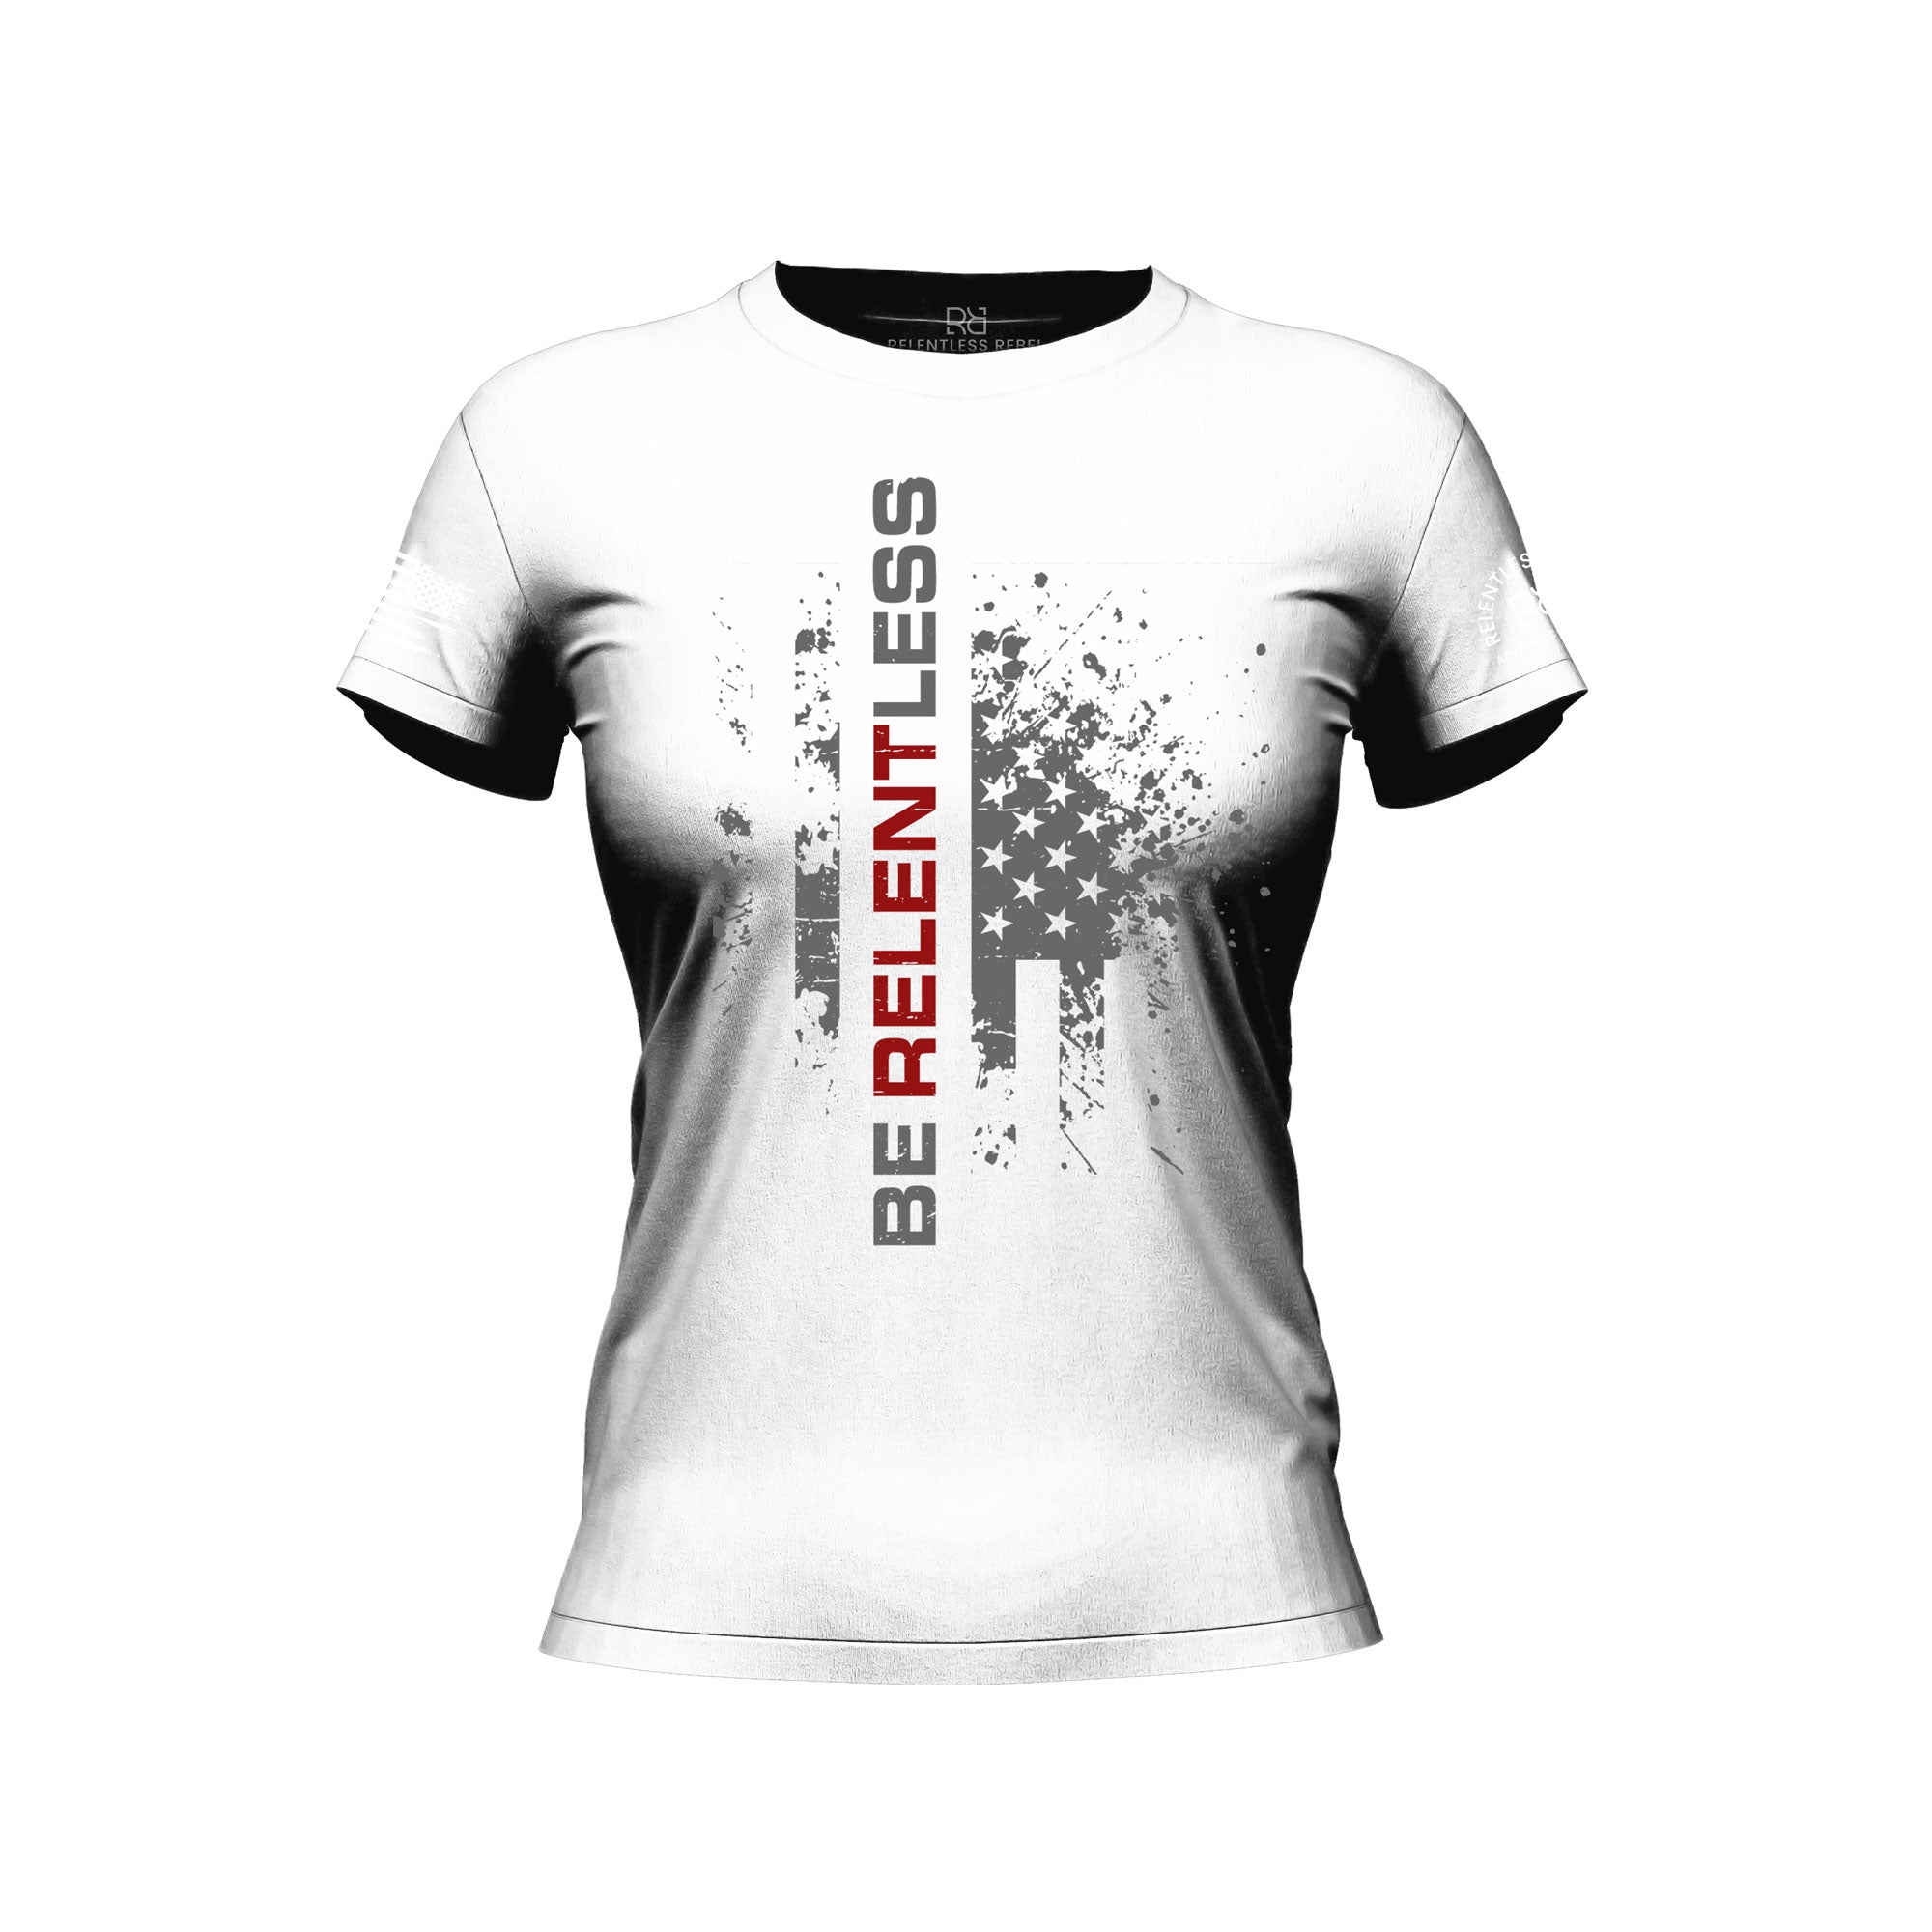 Be Relentless front design t-shirt